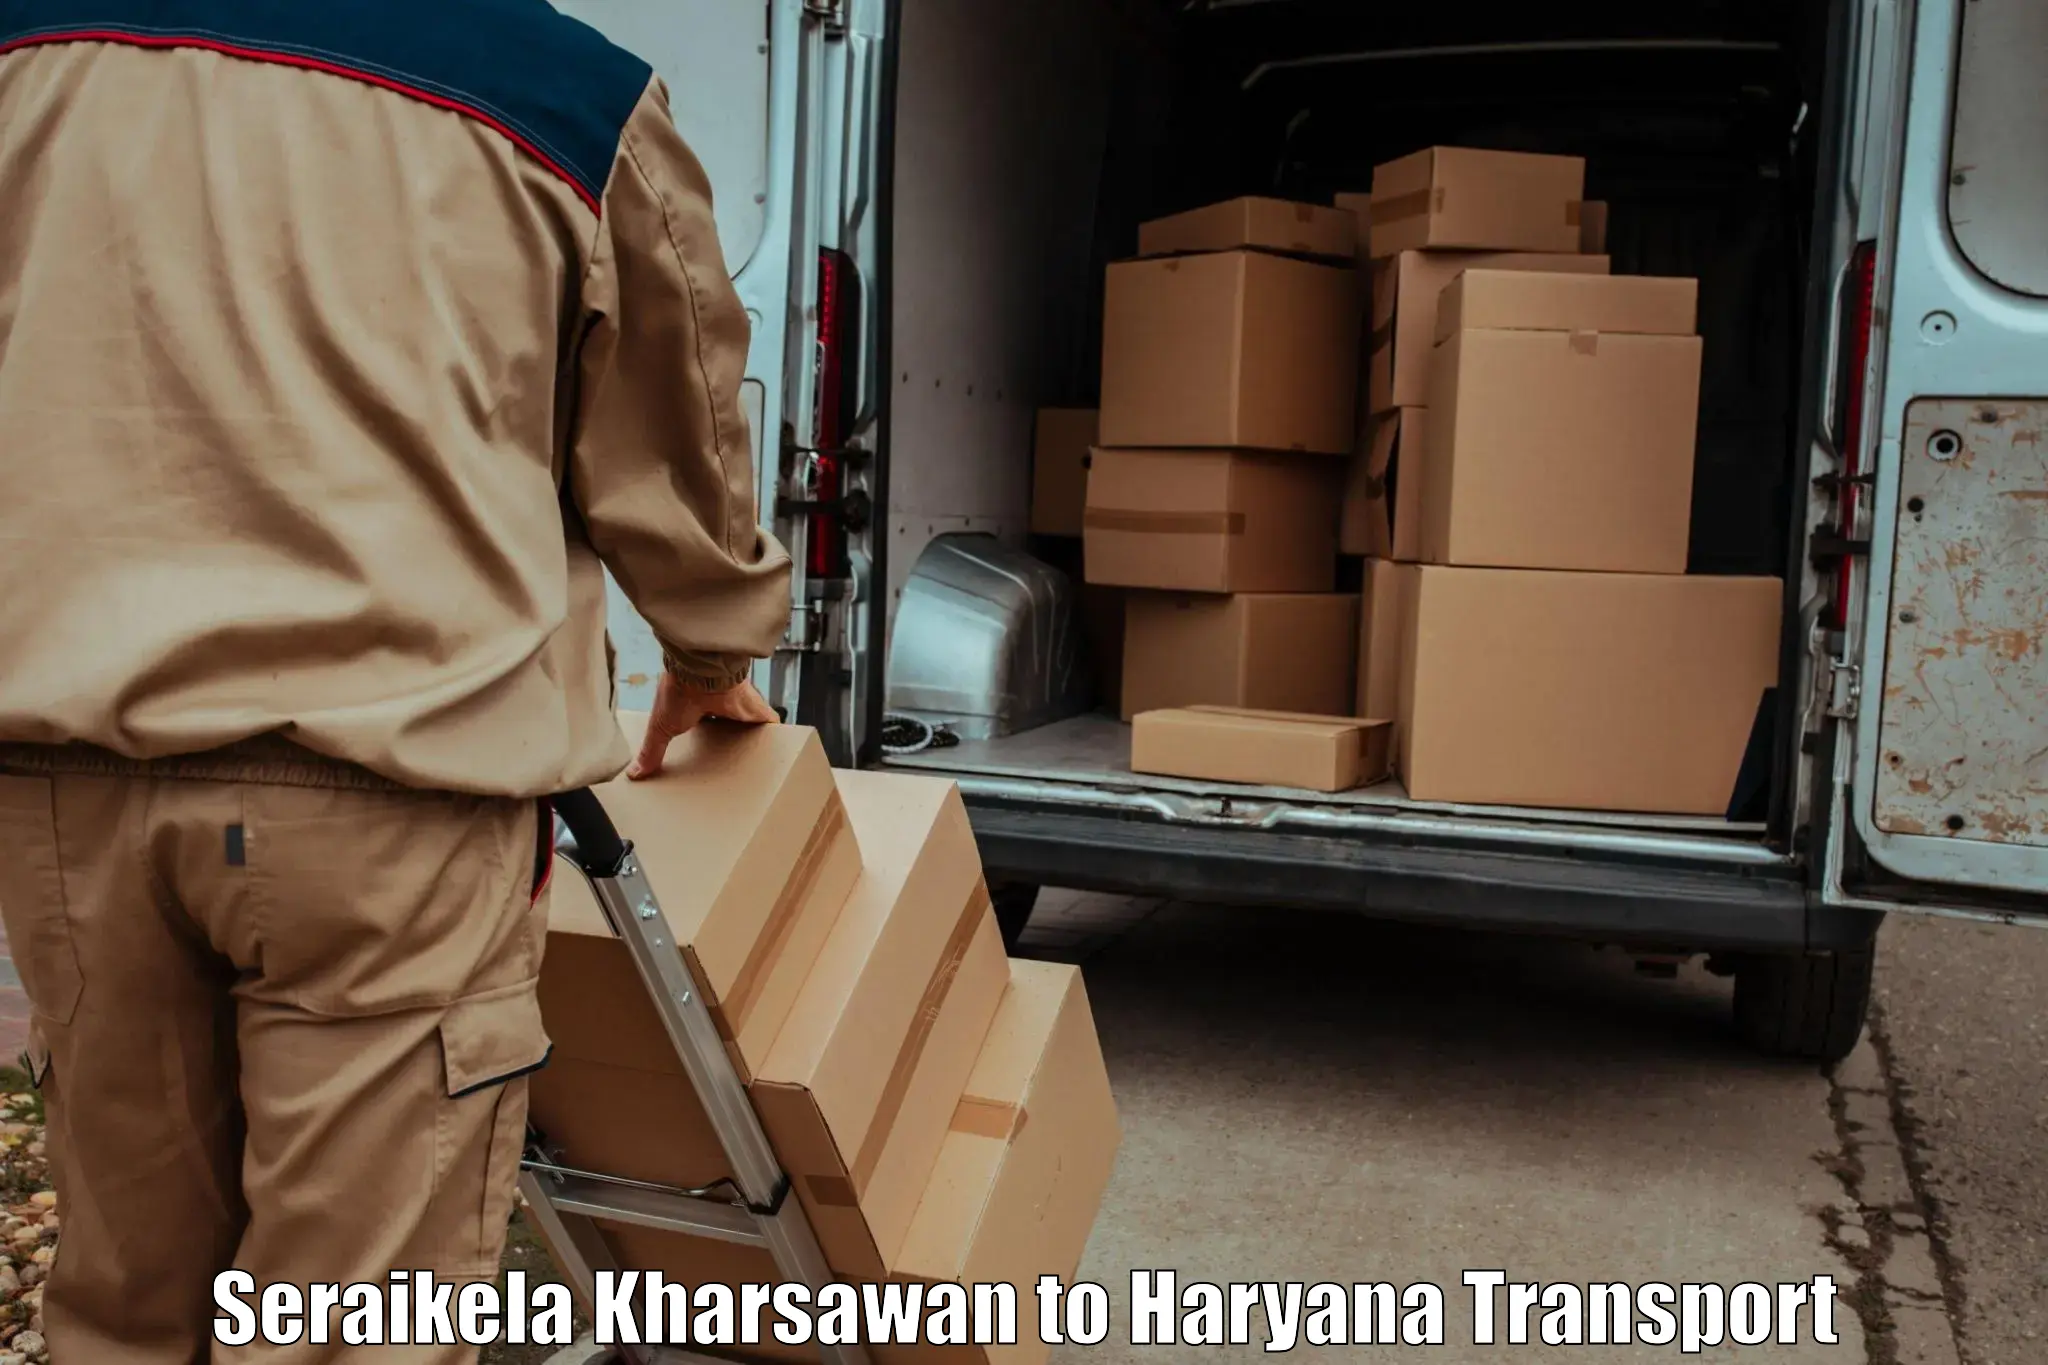 Transport bike from one state to another Seraikela Kharsawan to Narwana